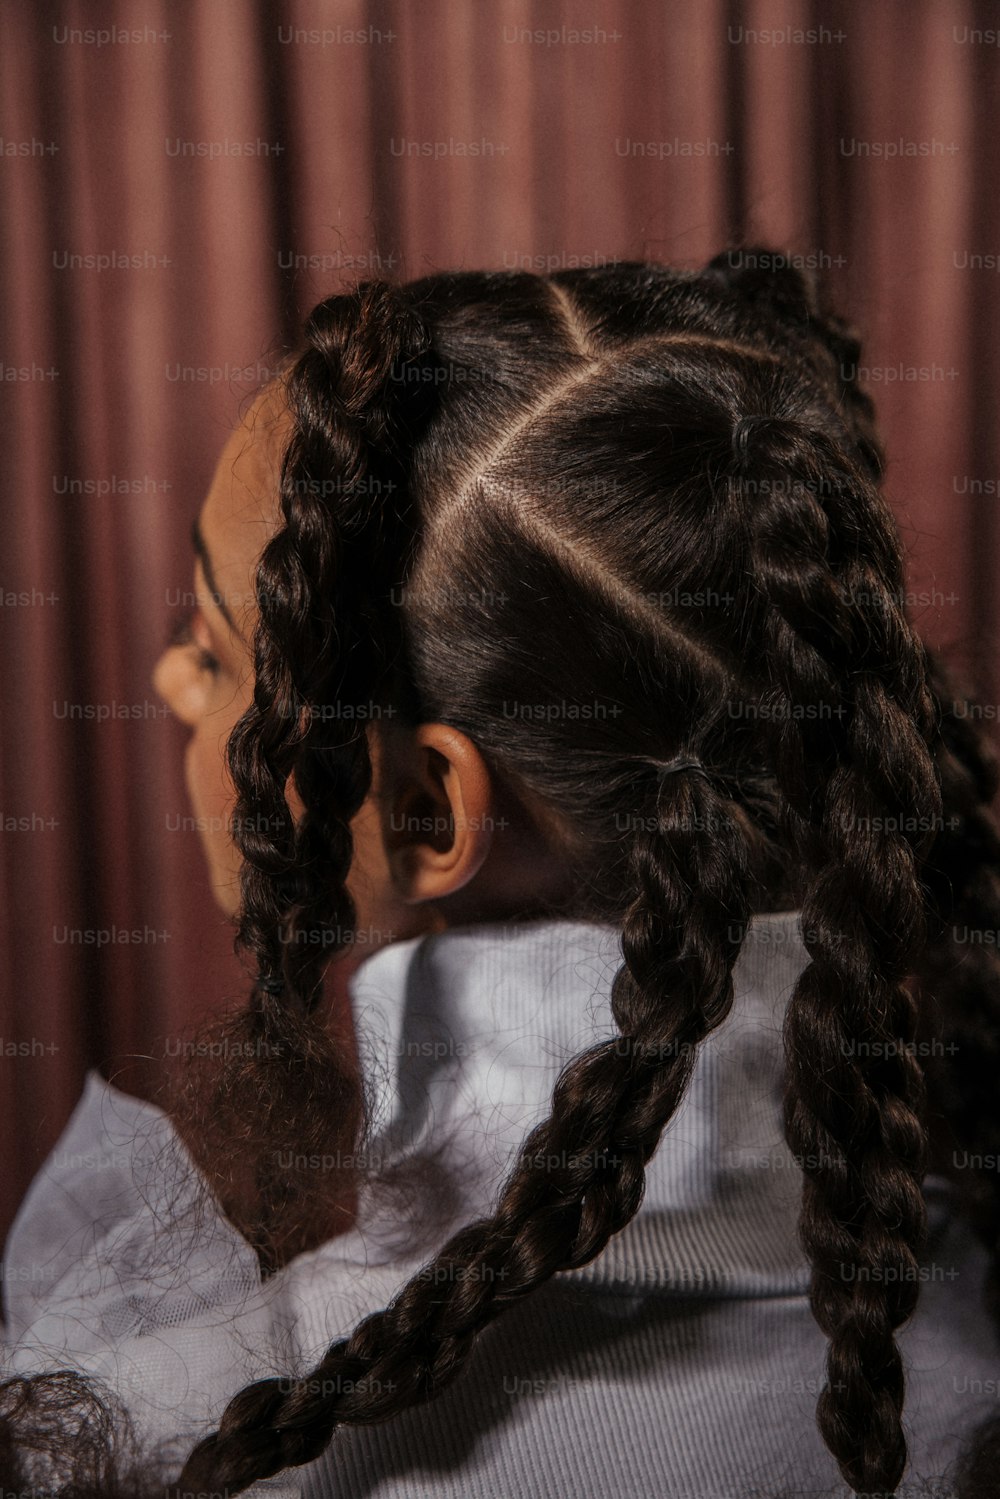 um close up de uma pessoa com cabelo comprido